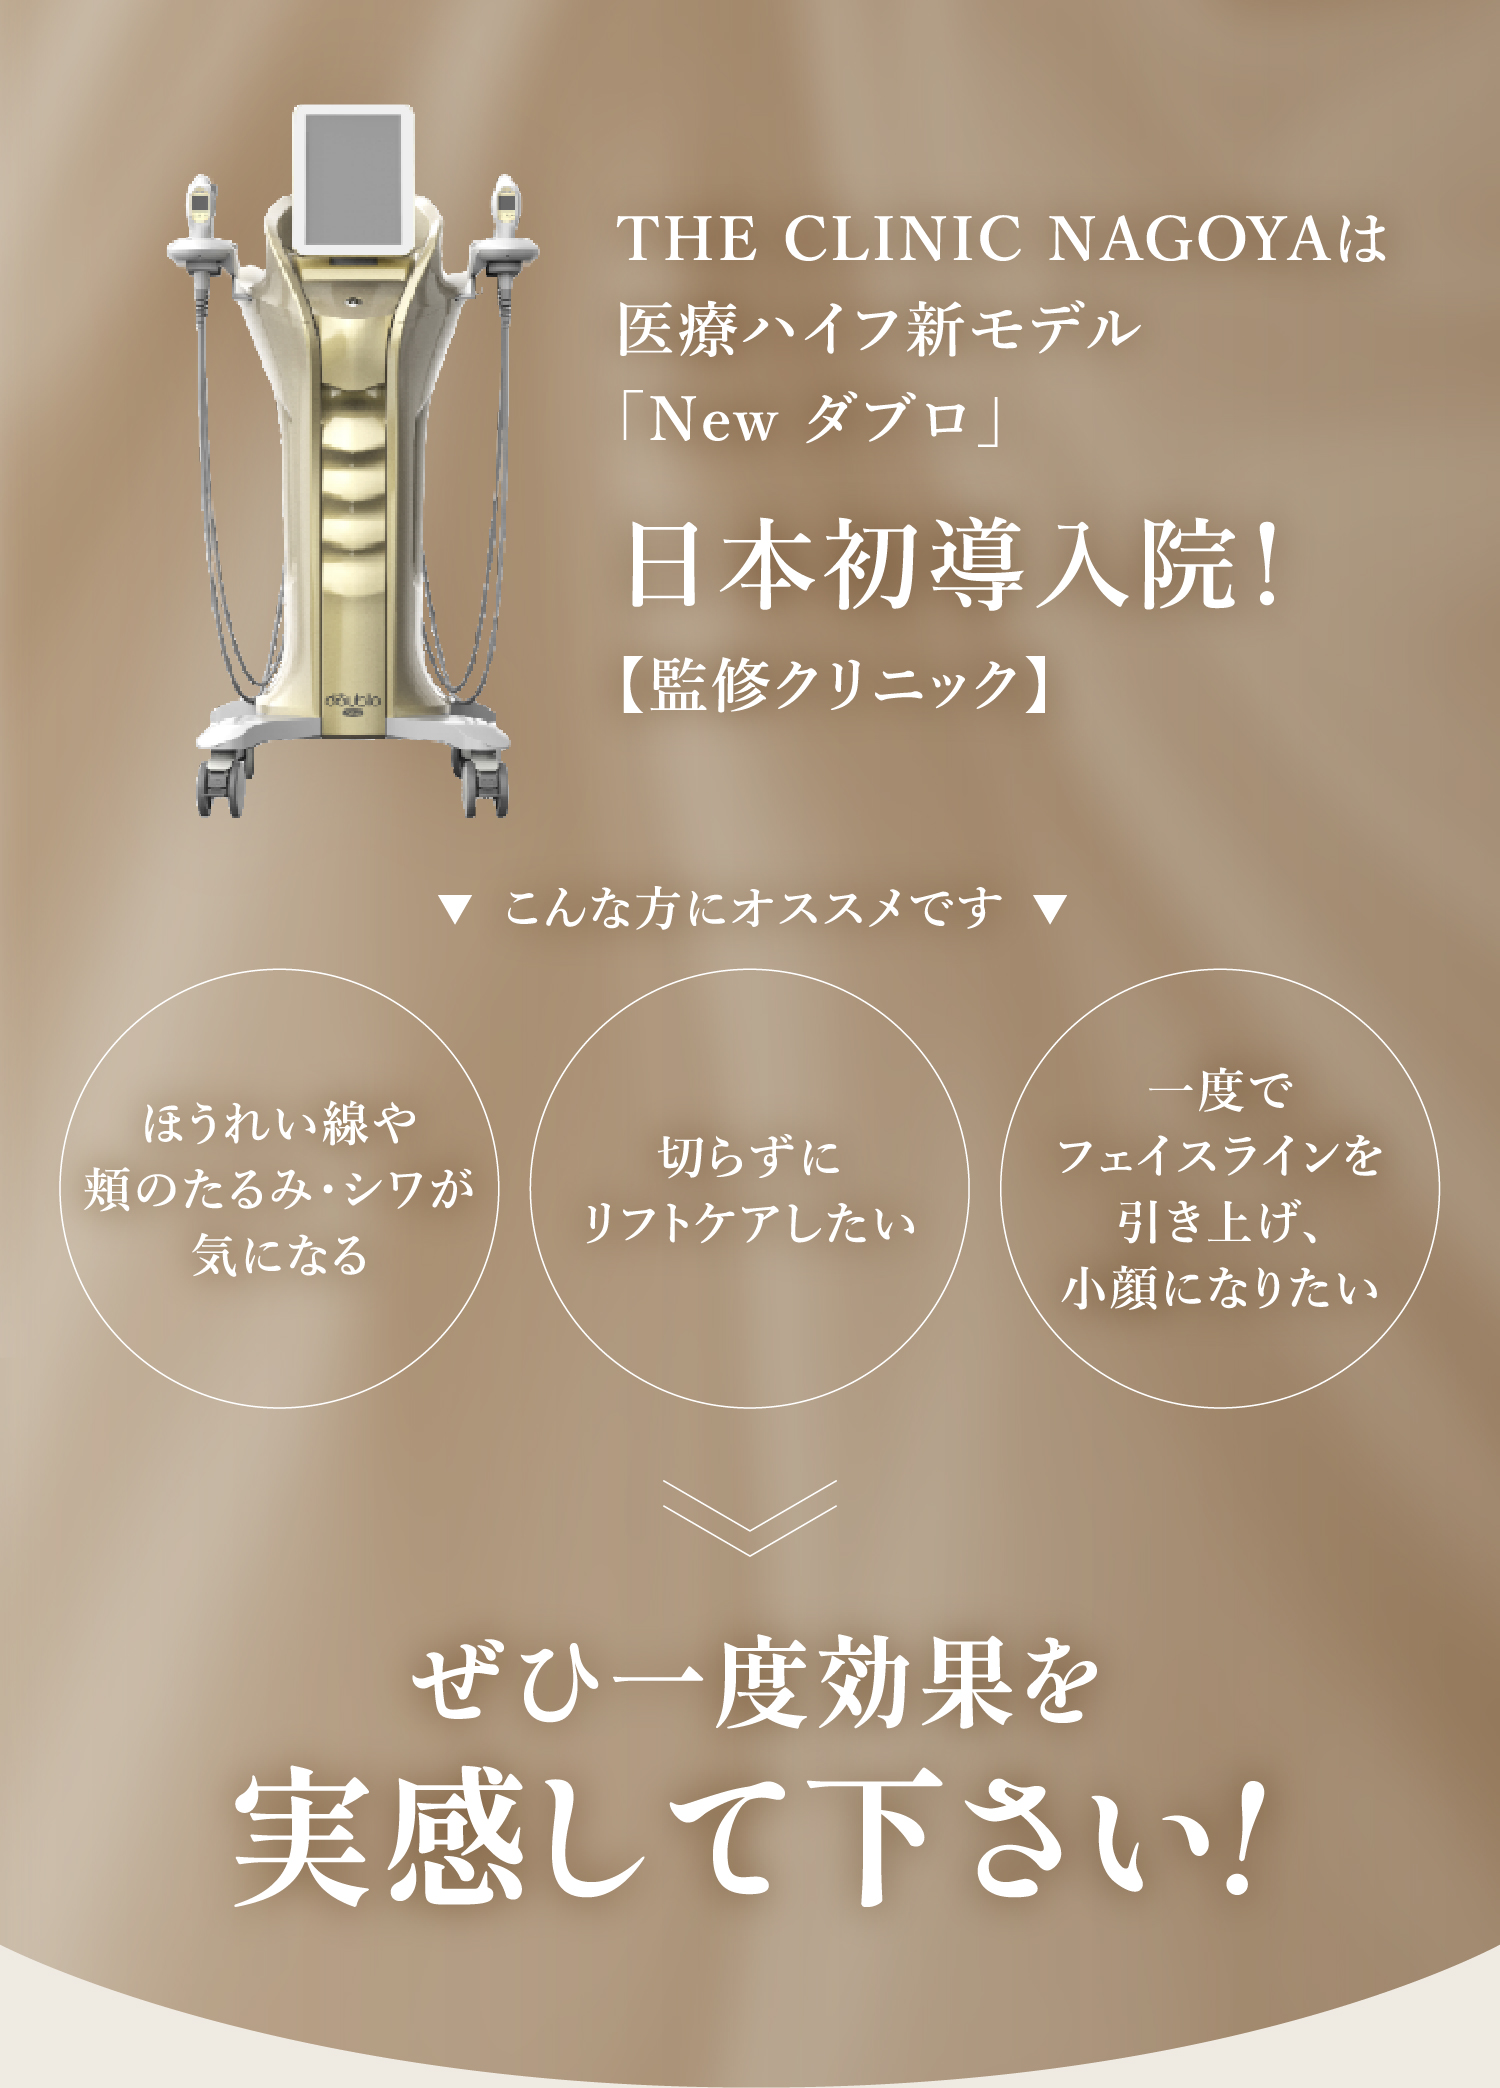 医療ハイフ新モデル「NEWダブロ」日本初導入院